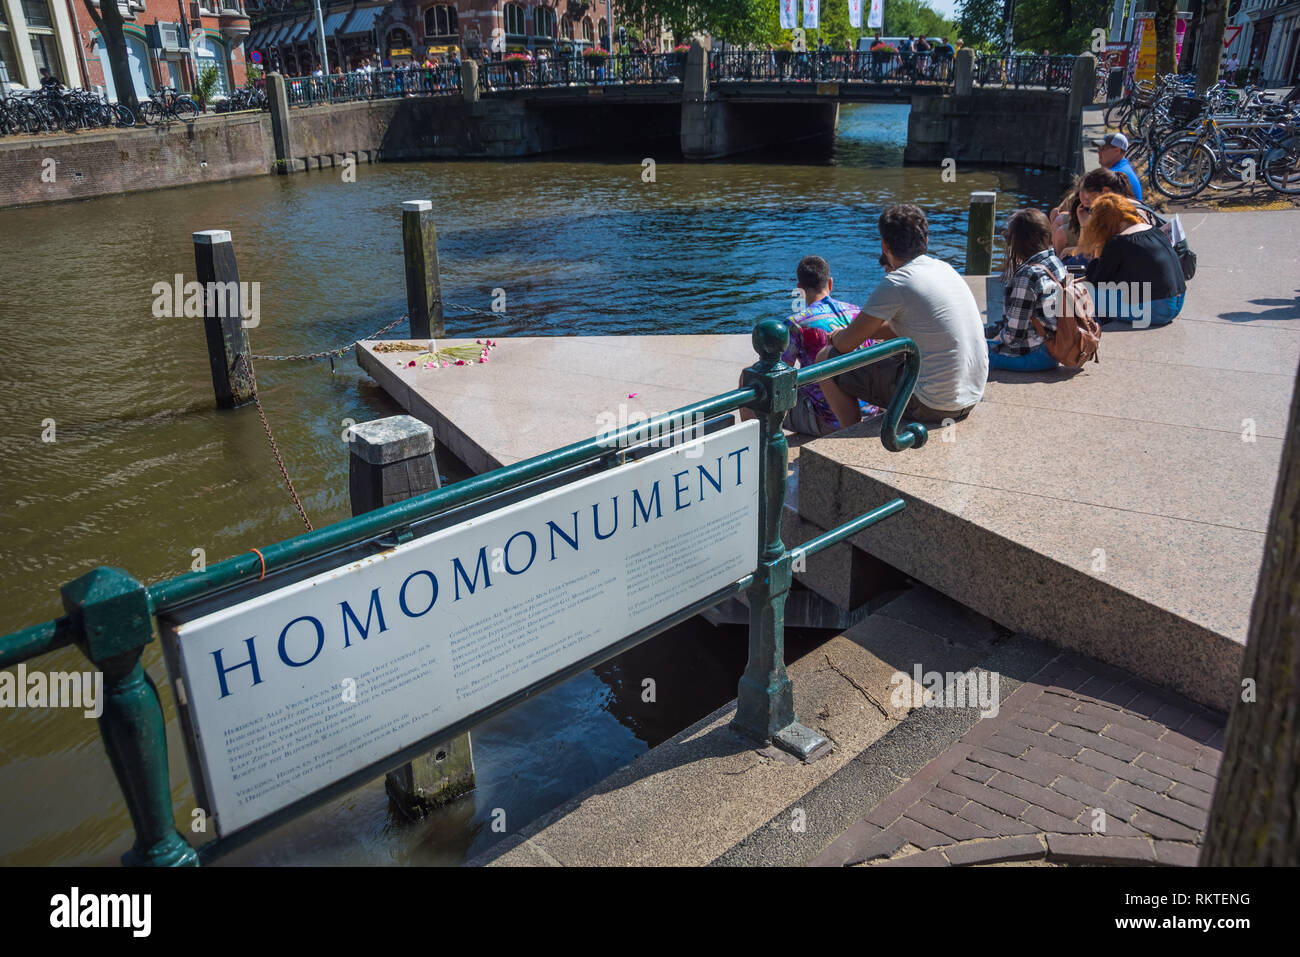 Homomonument Das ist ein Denkmal im Zentrum von Amsterdam bei der Westerkerk suis Westermarkt. Es wurde 1987 nach einem Entwurf der niederländischen Kün Banque D'Images